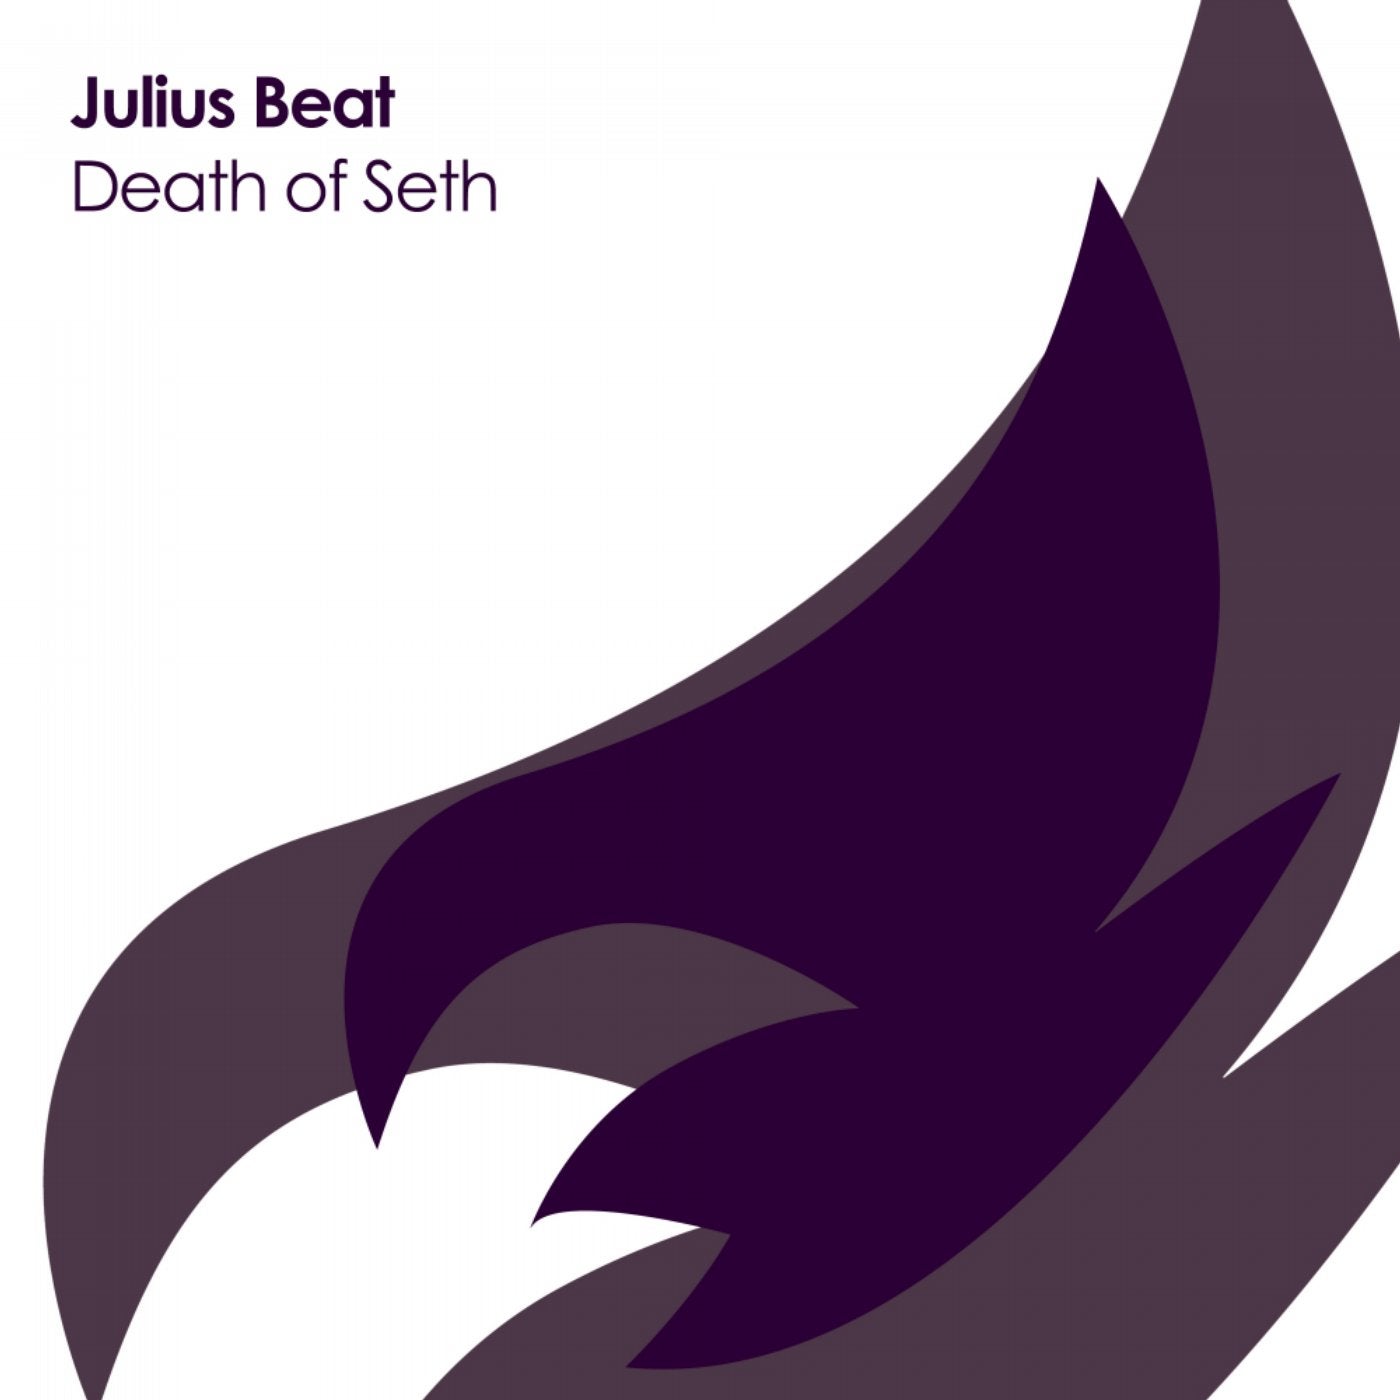 Death of Seth